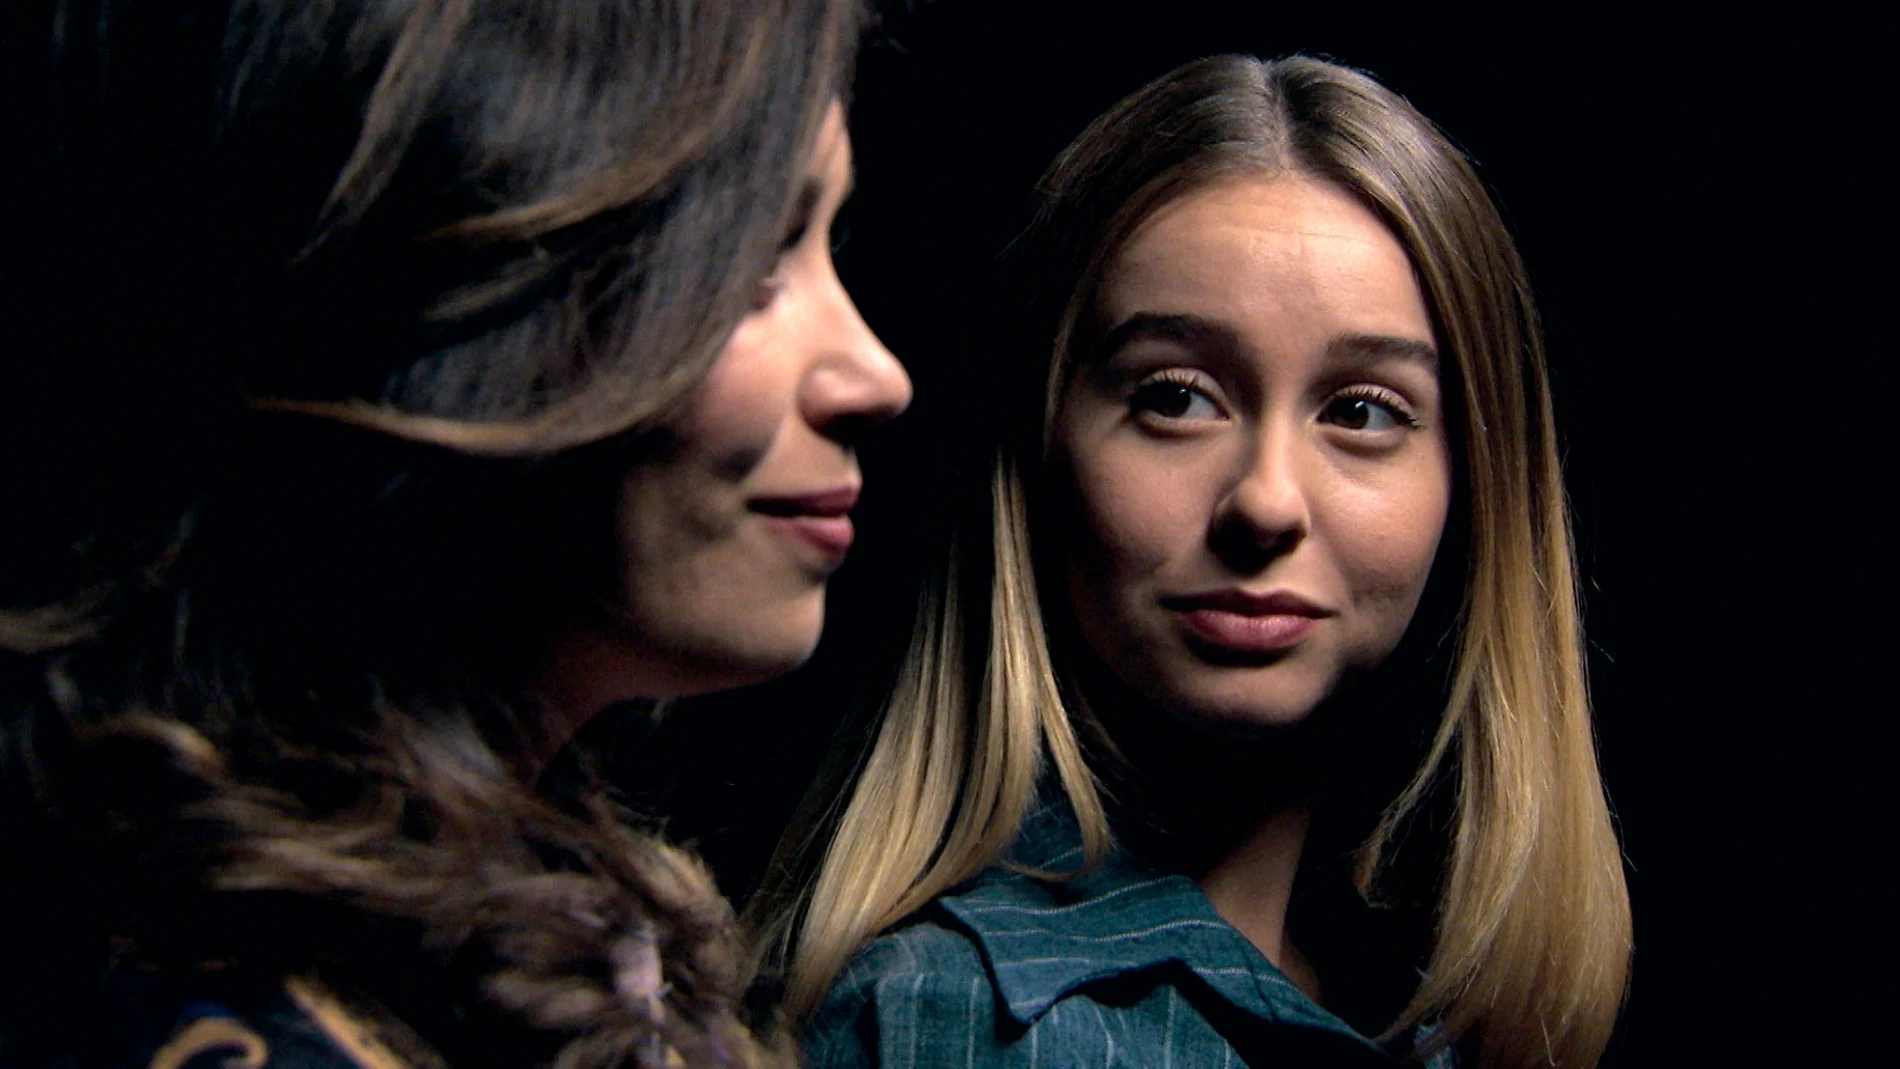 Luisita y Amelia se dicen adiós soñando un futuro juntas